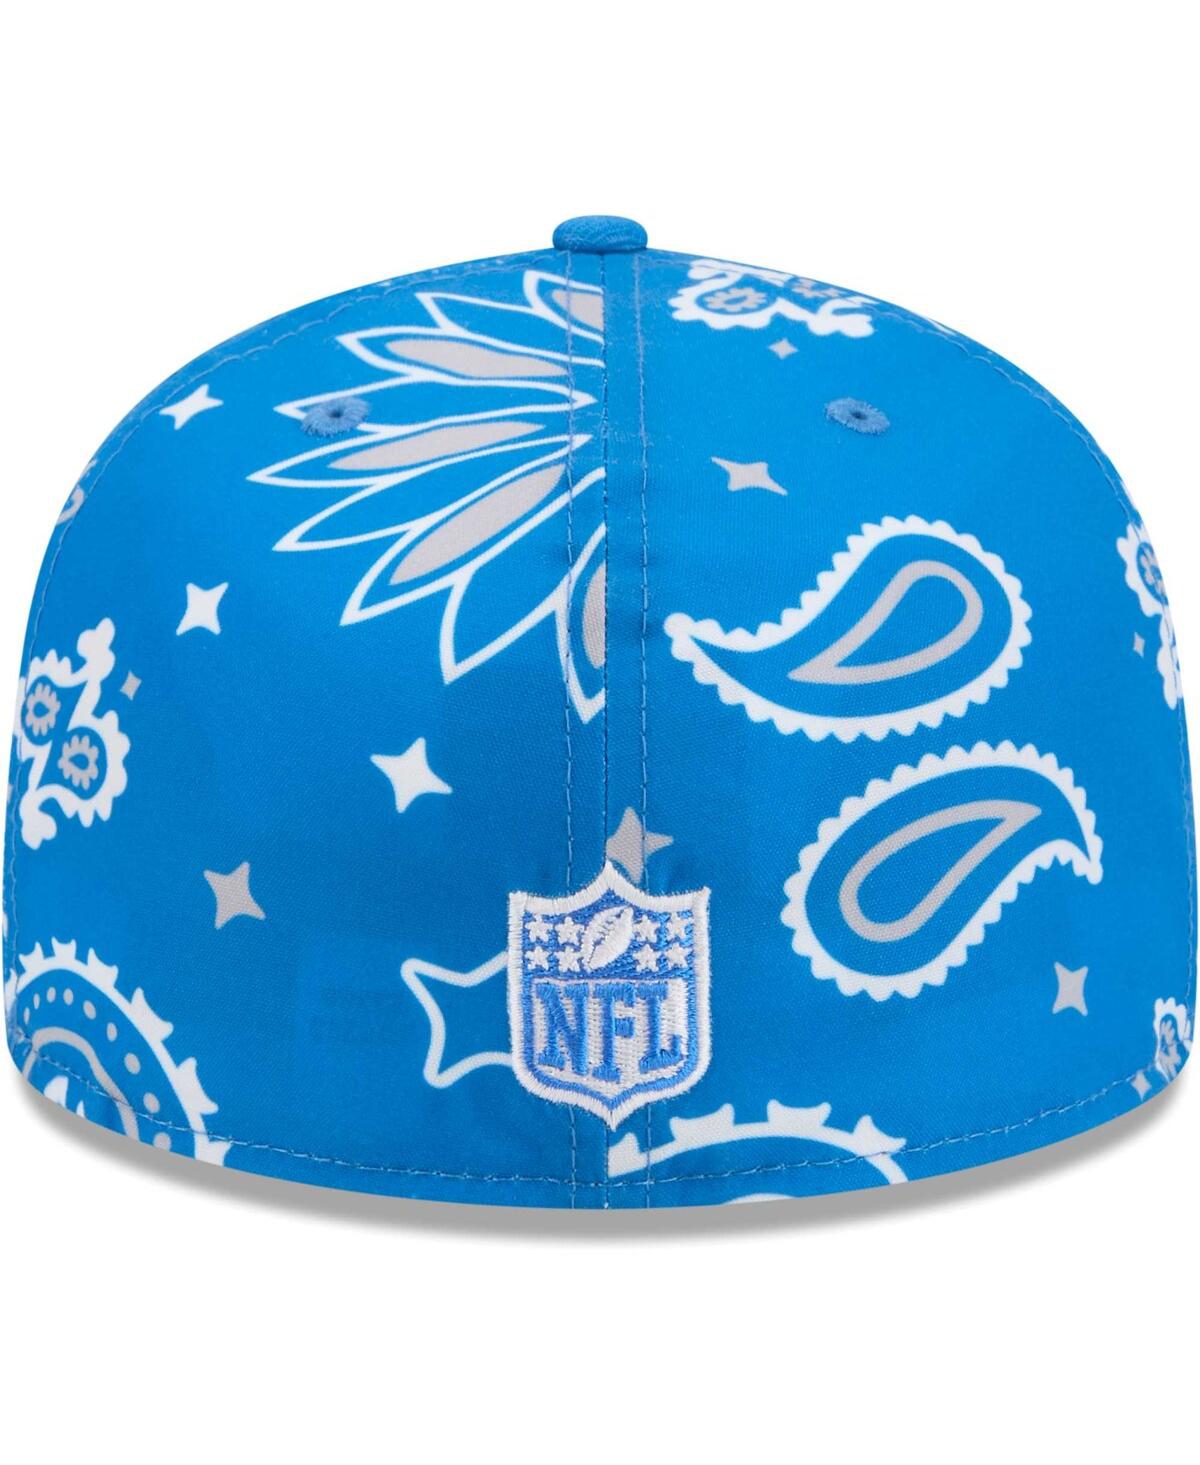 Shop New Era Men's Blue Detroit Lions Paisley 59fifty Fitted Hat